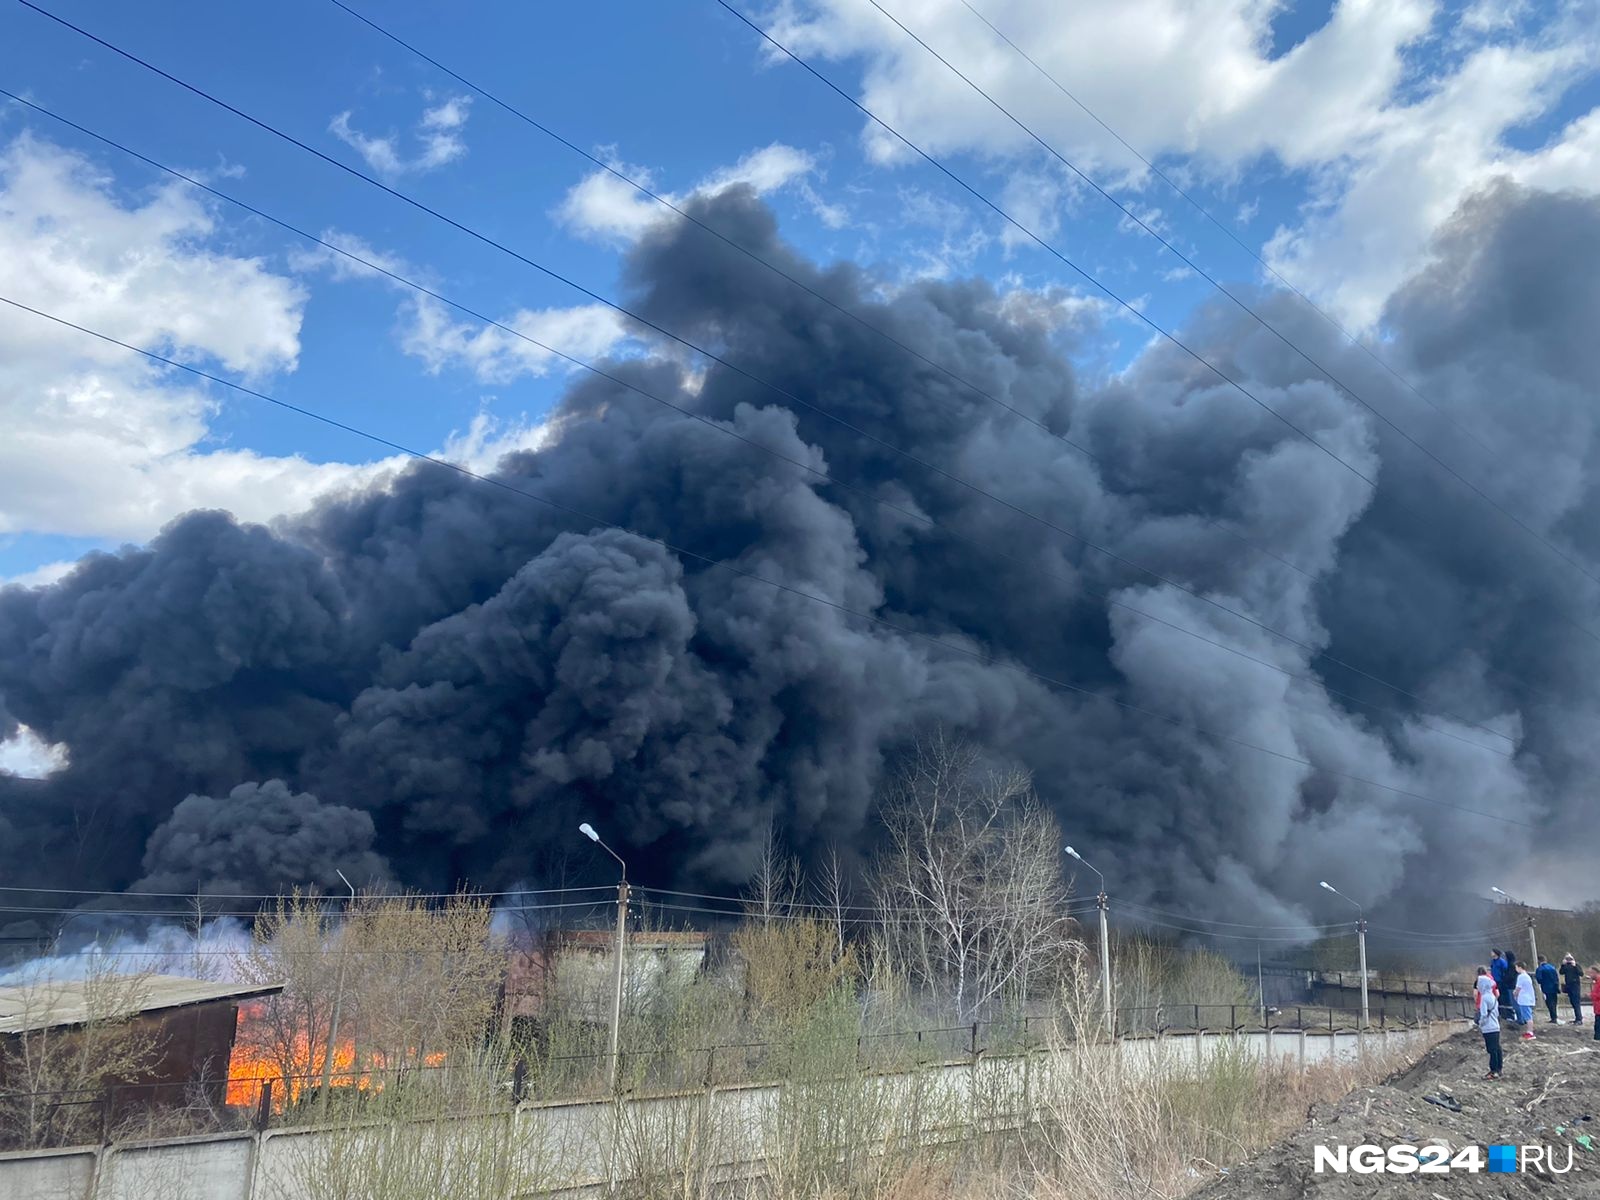 Черный дым что горит. Пожар фото. Пожар в Красноярске сейчас. Крупный пожар в Красноярске. Завод с дымом.